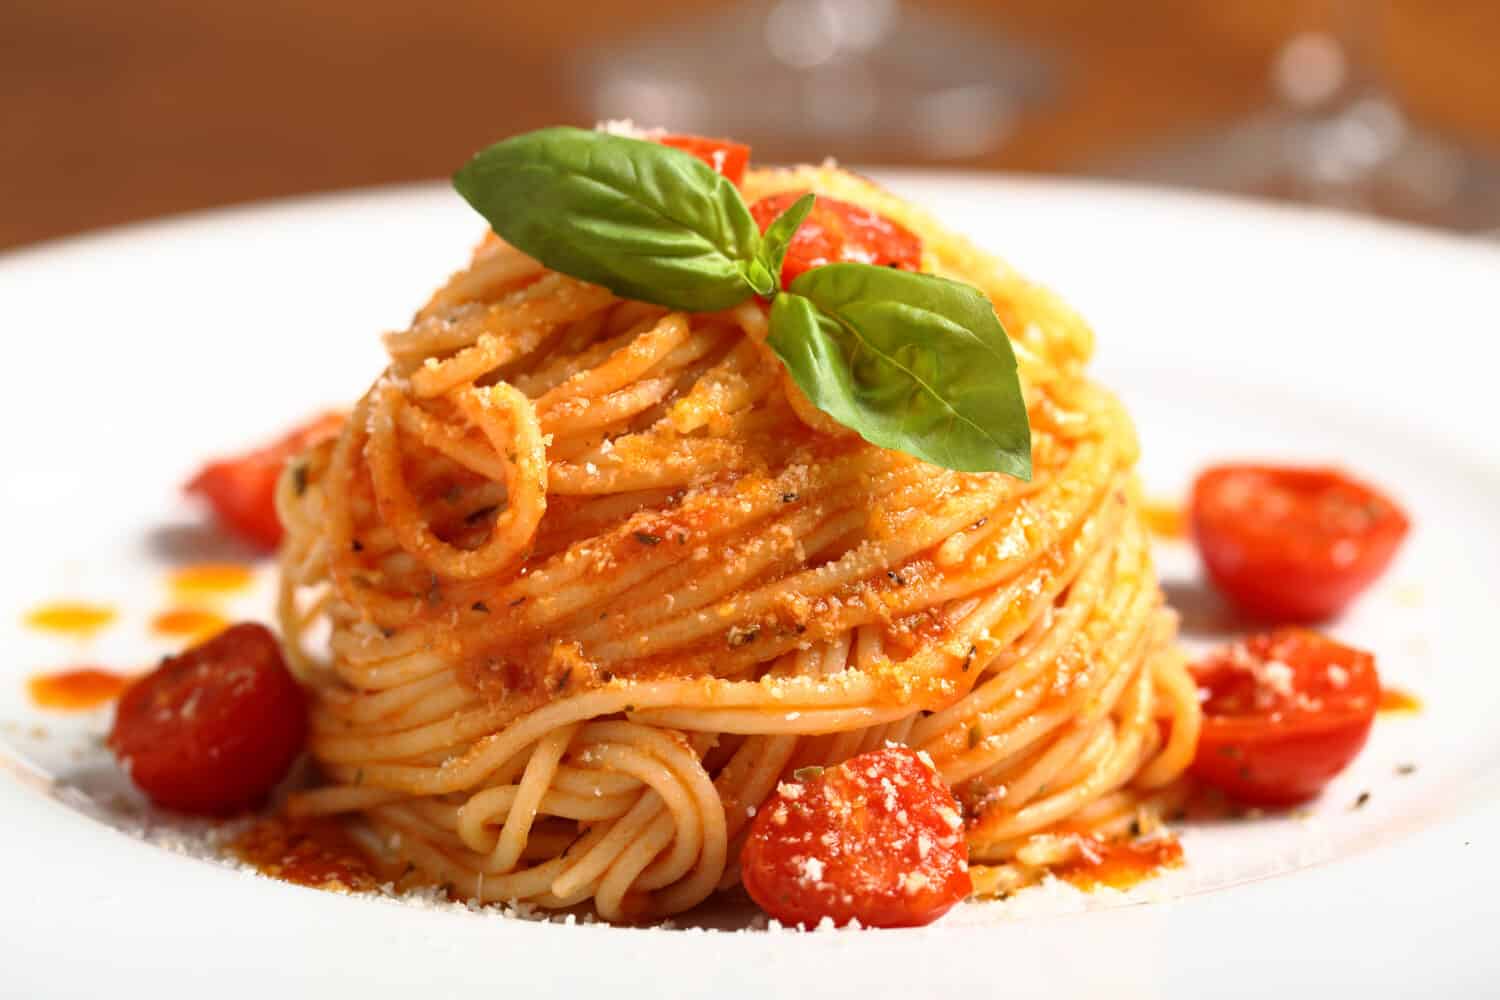 italian pasta with tomato sauce